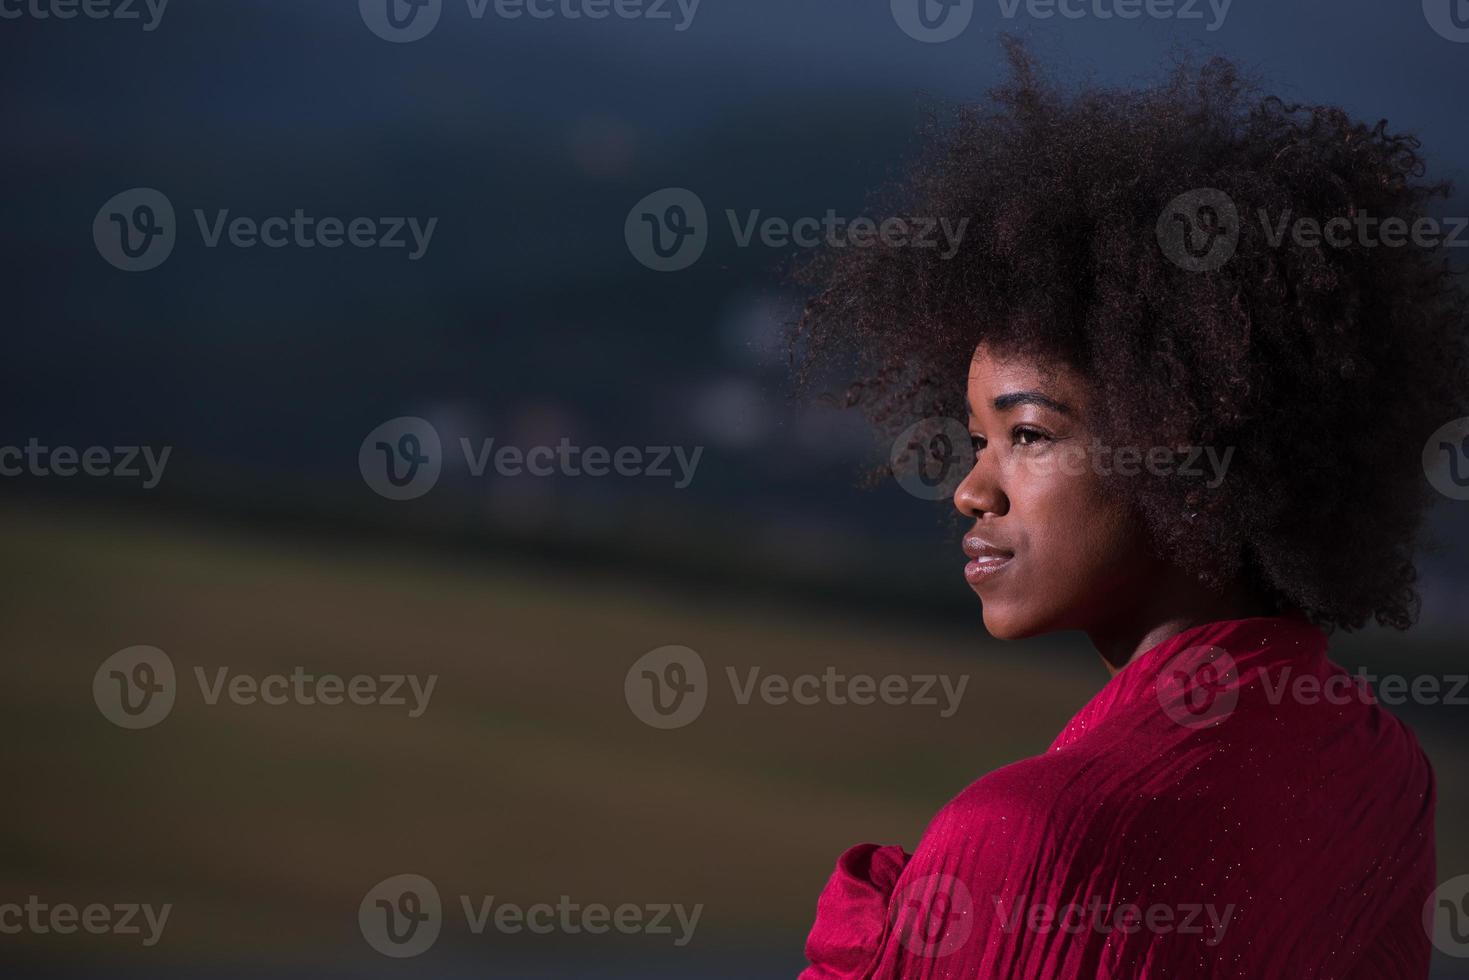 utomhus- porträtt av en svart kvinna med en scarf foto